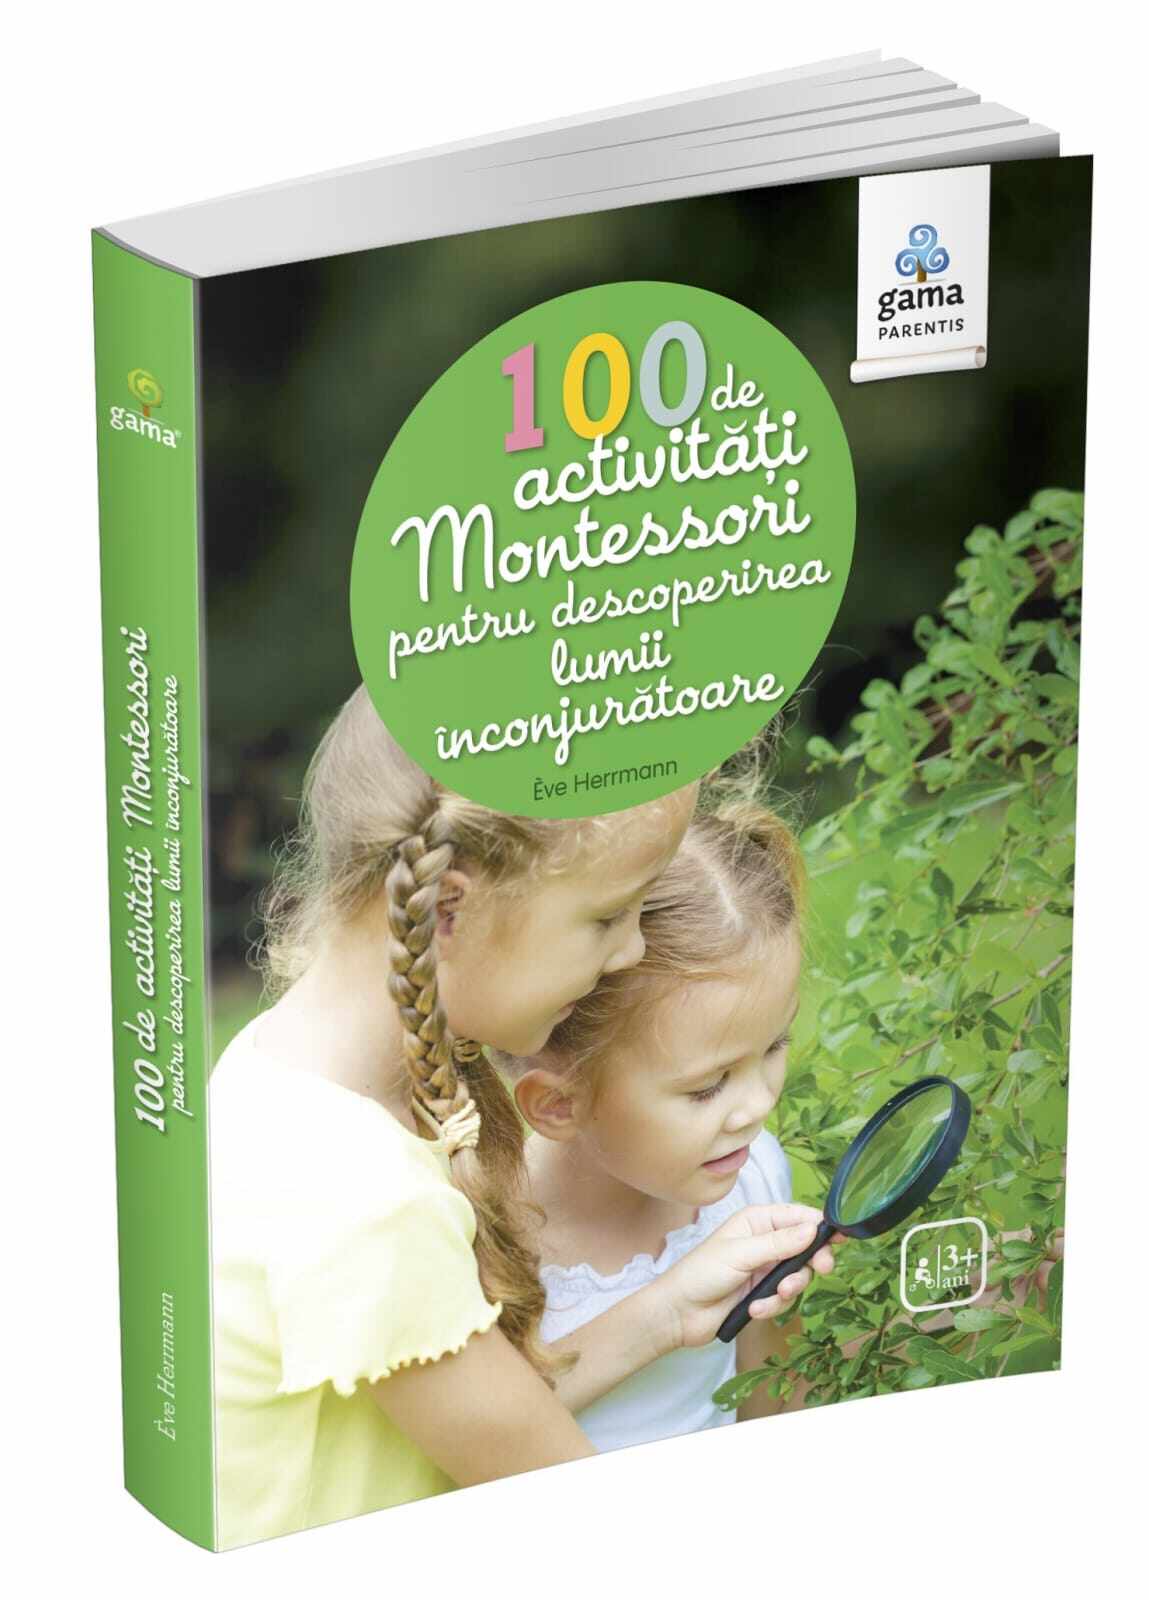 100 de activitati Montessori pentru descoperirea lumii inconjuratoare, Editura Gama, 2-3 ani +